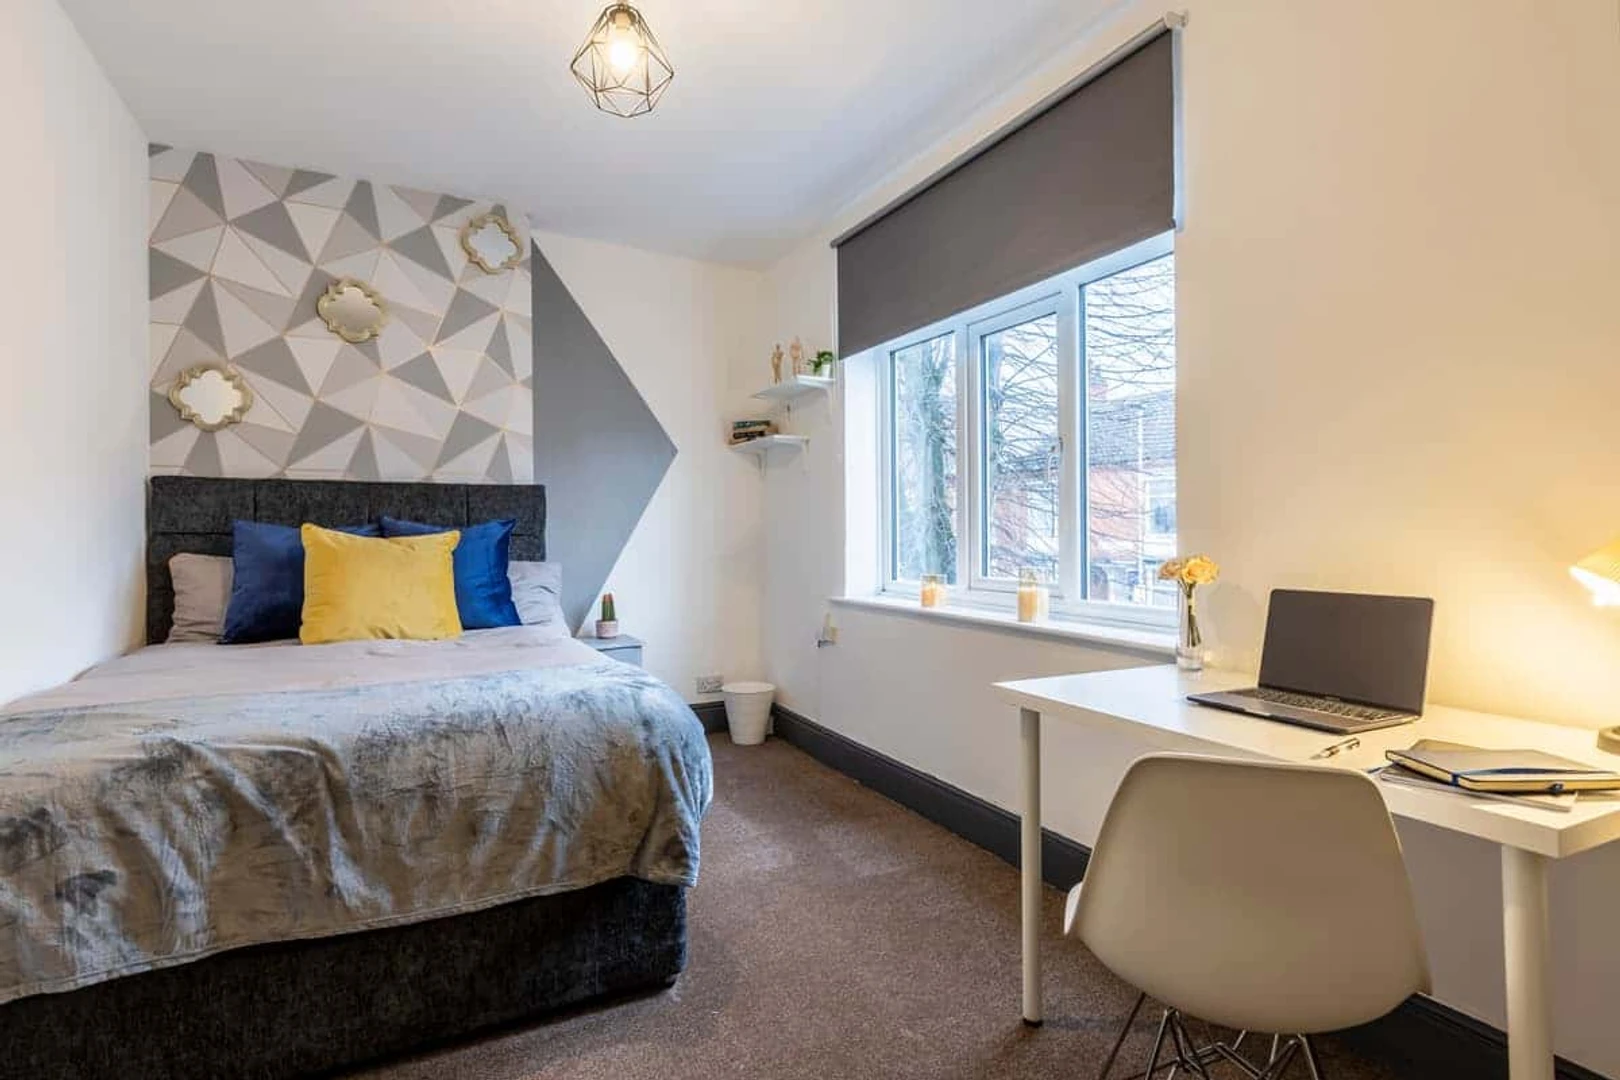 Alquiler de habitaciones por meses en Leicester